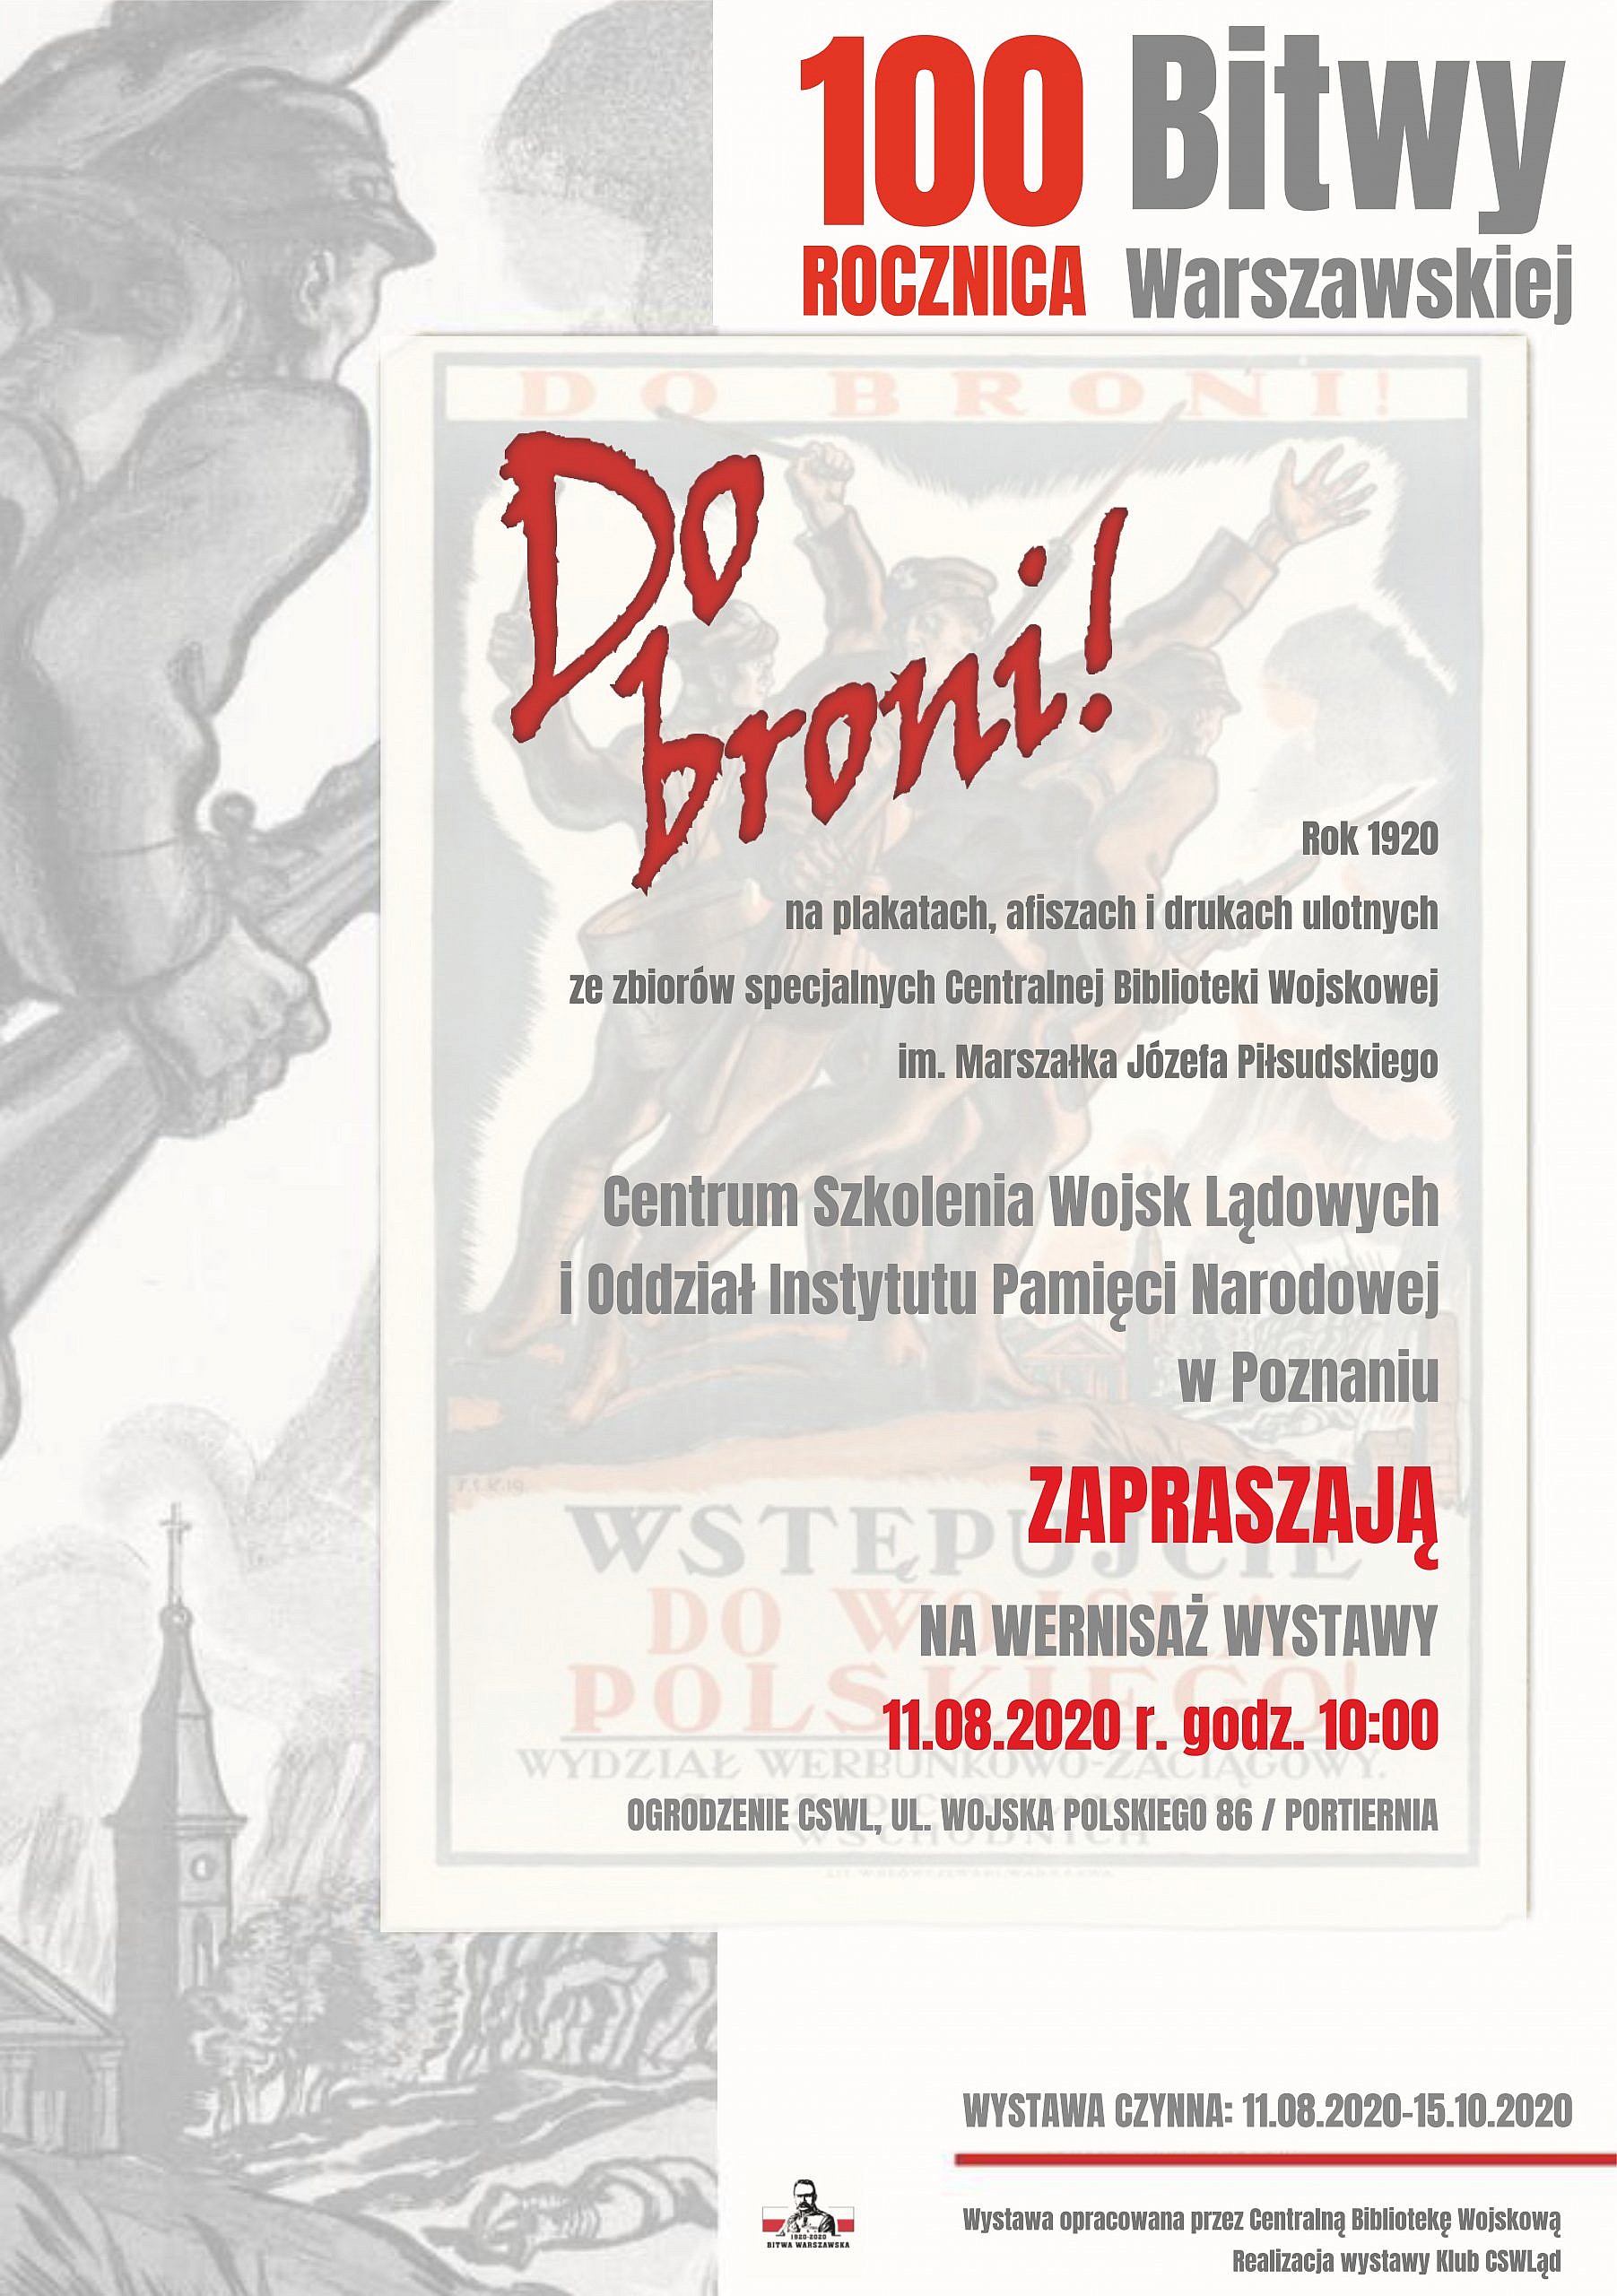 Plakat zapraszający na wernisaż wystawy z okazji 100 rocznicy Bitwy Warszawskiej